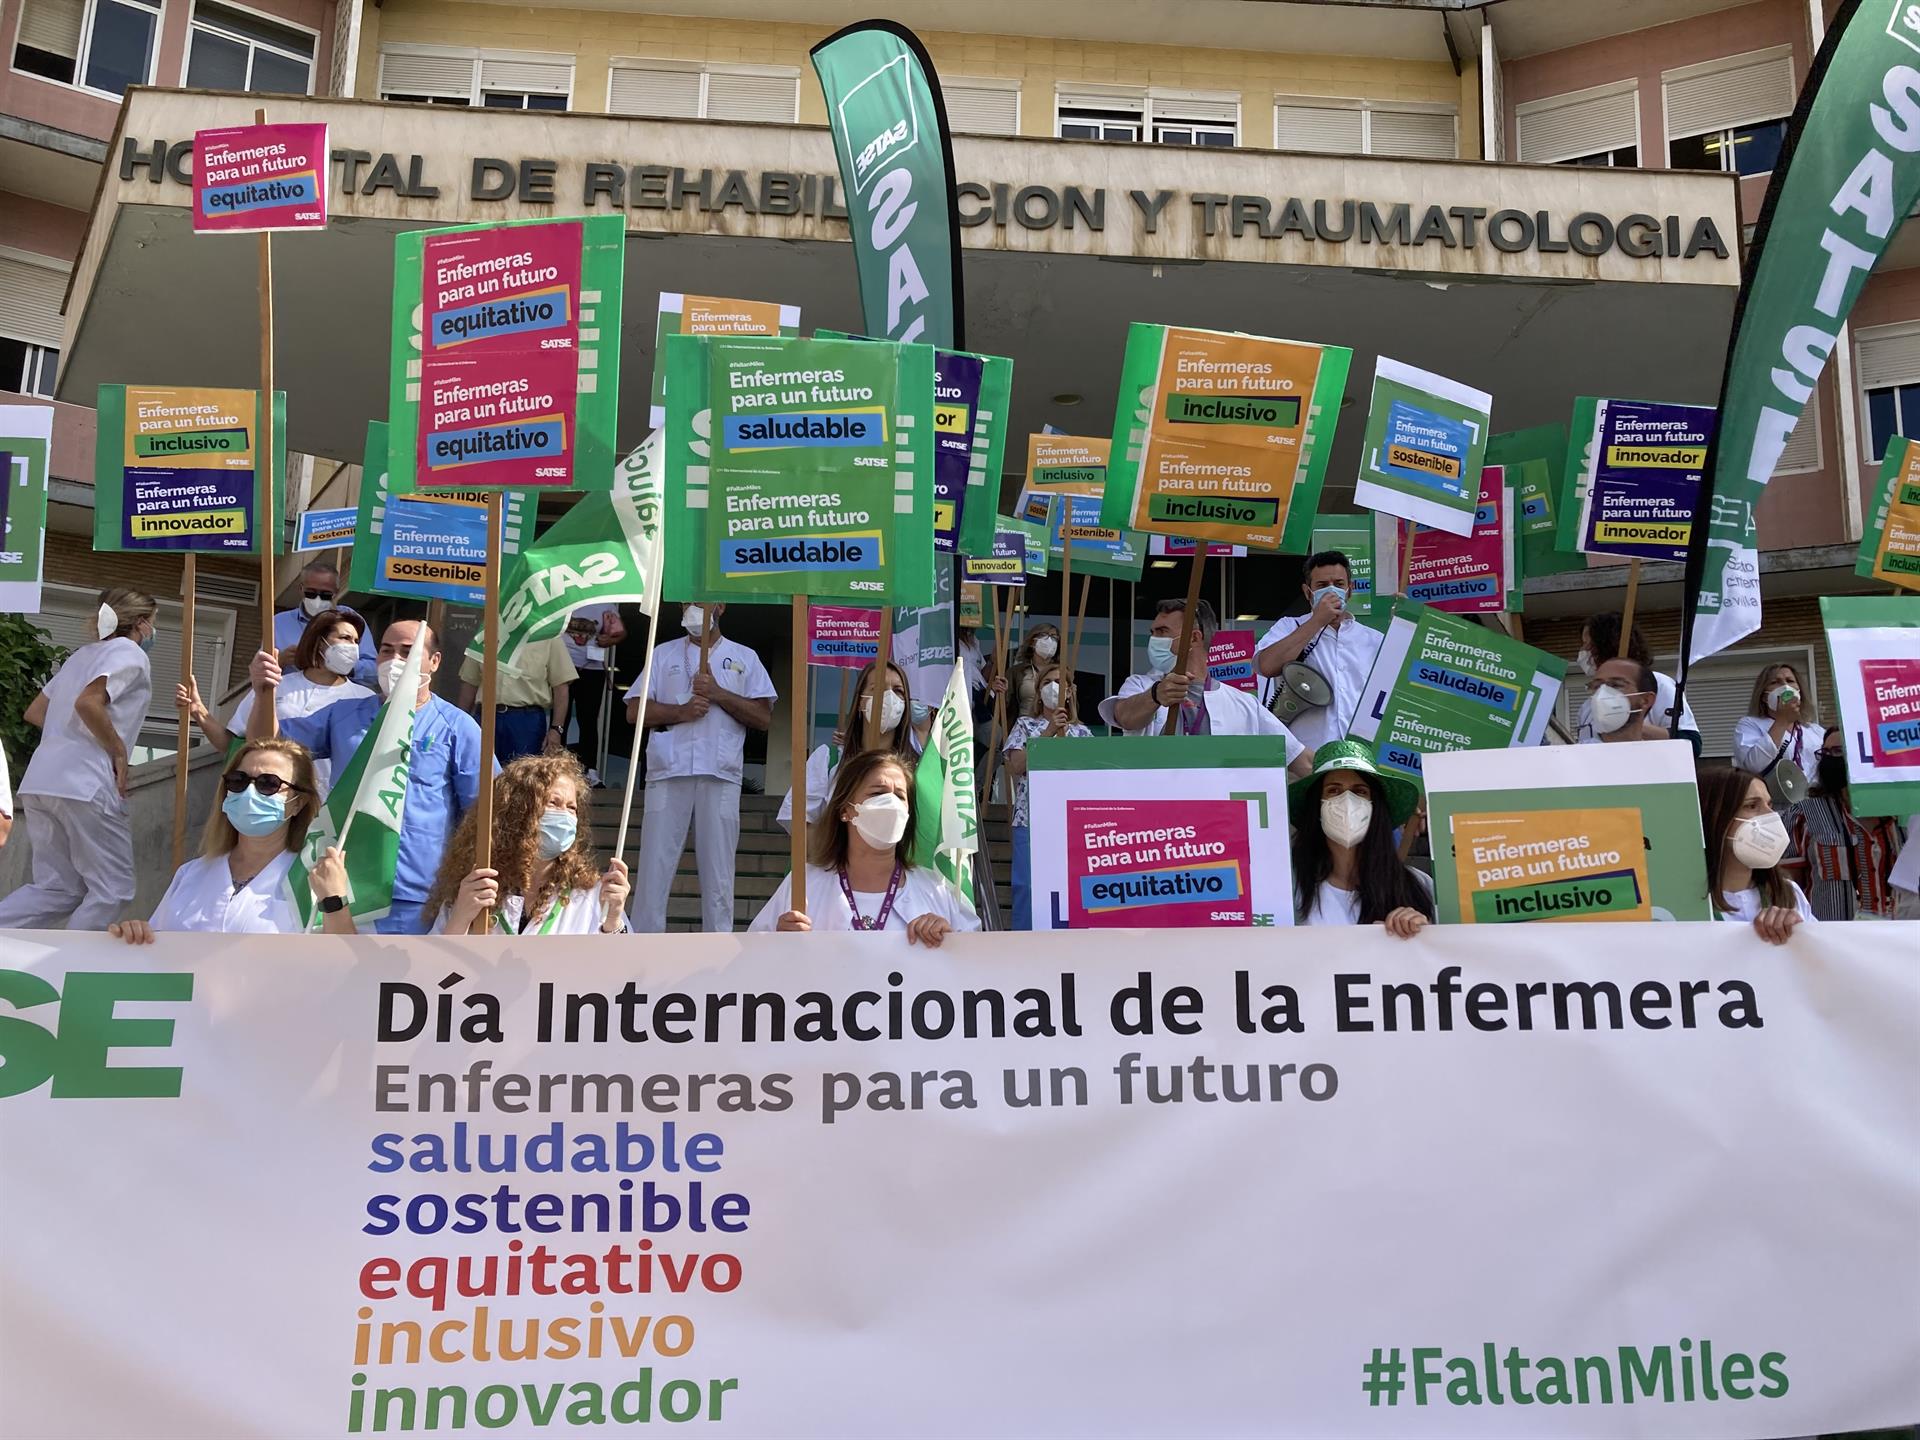 Enfermeros salen a la calle en Andalucía para reivindicar que "son el motor de nuestro sistema sanitario"